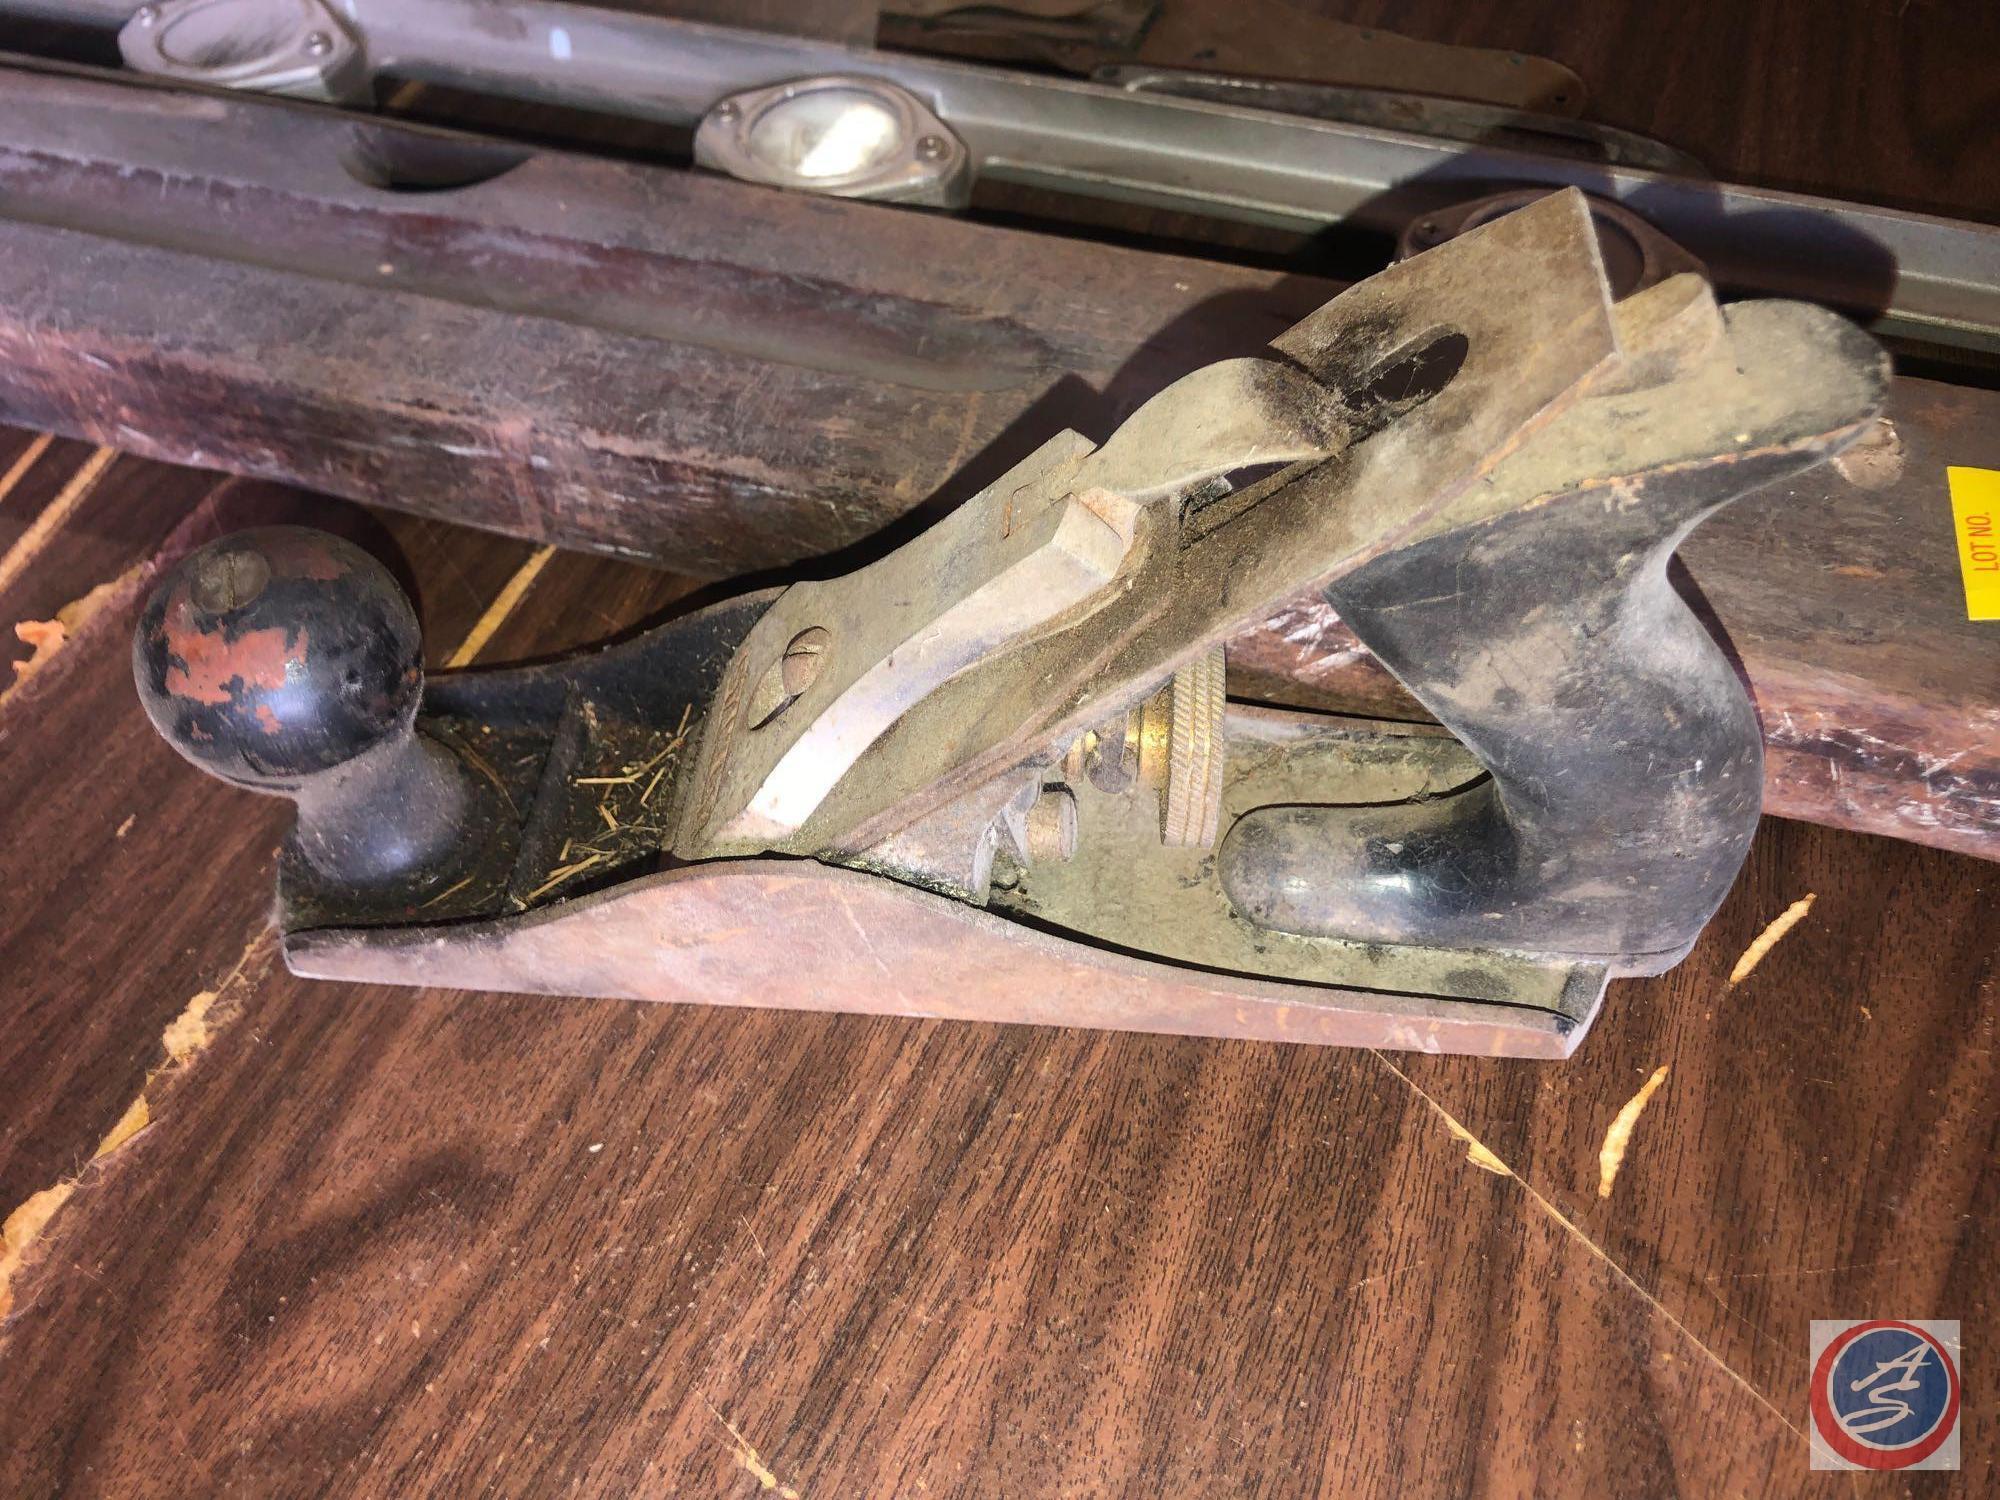 Vintage Stanley Hand Held Planer, Vintage Wooden Level, Metal Level and More